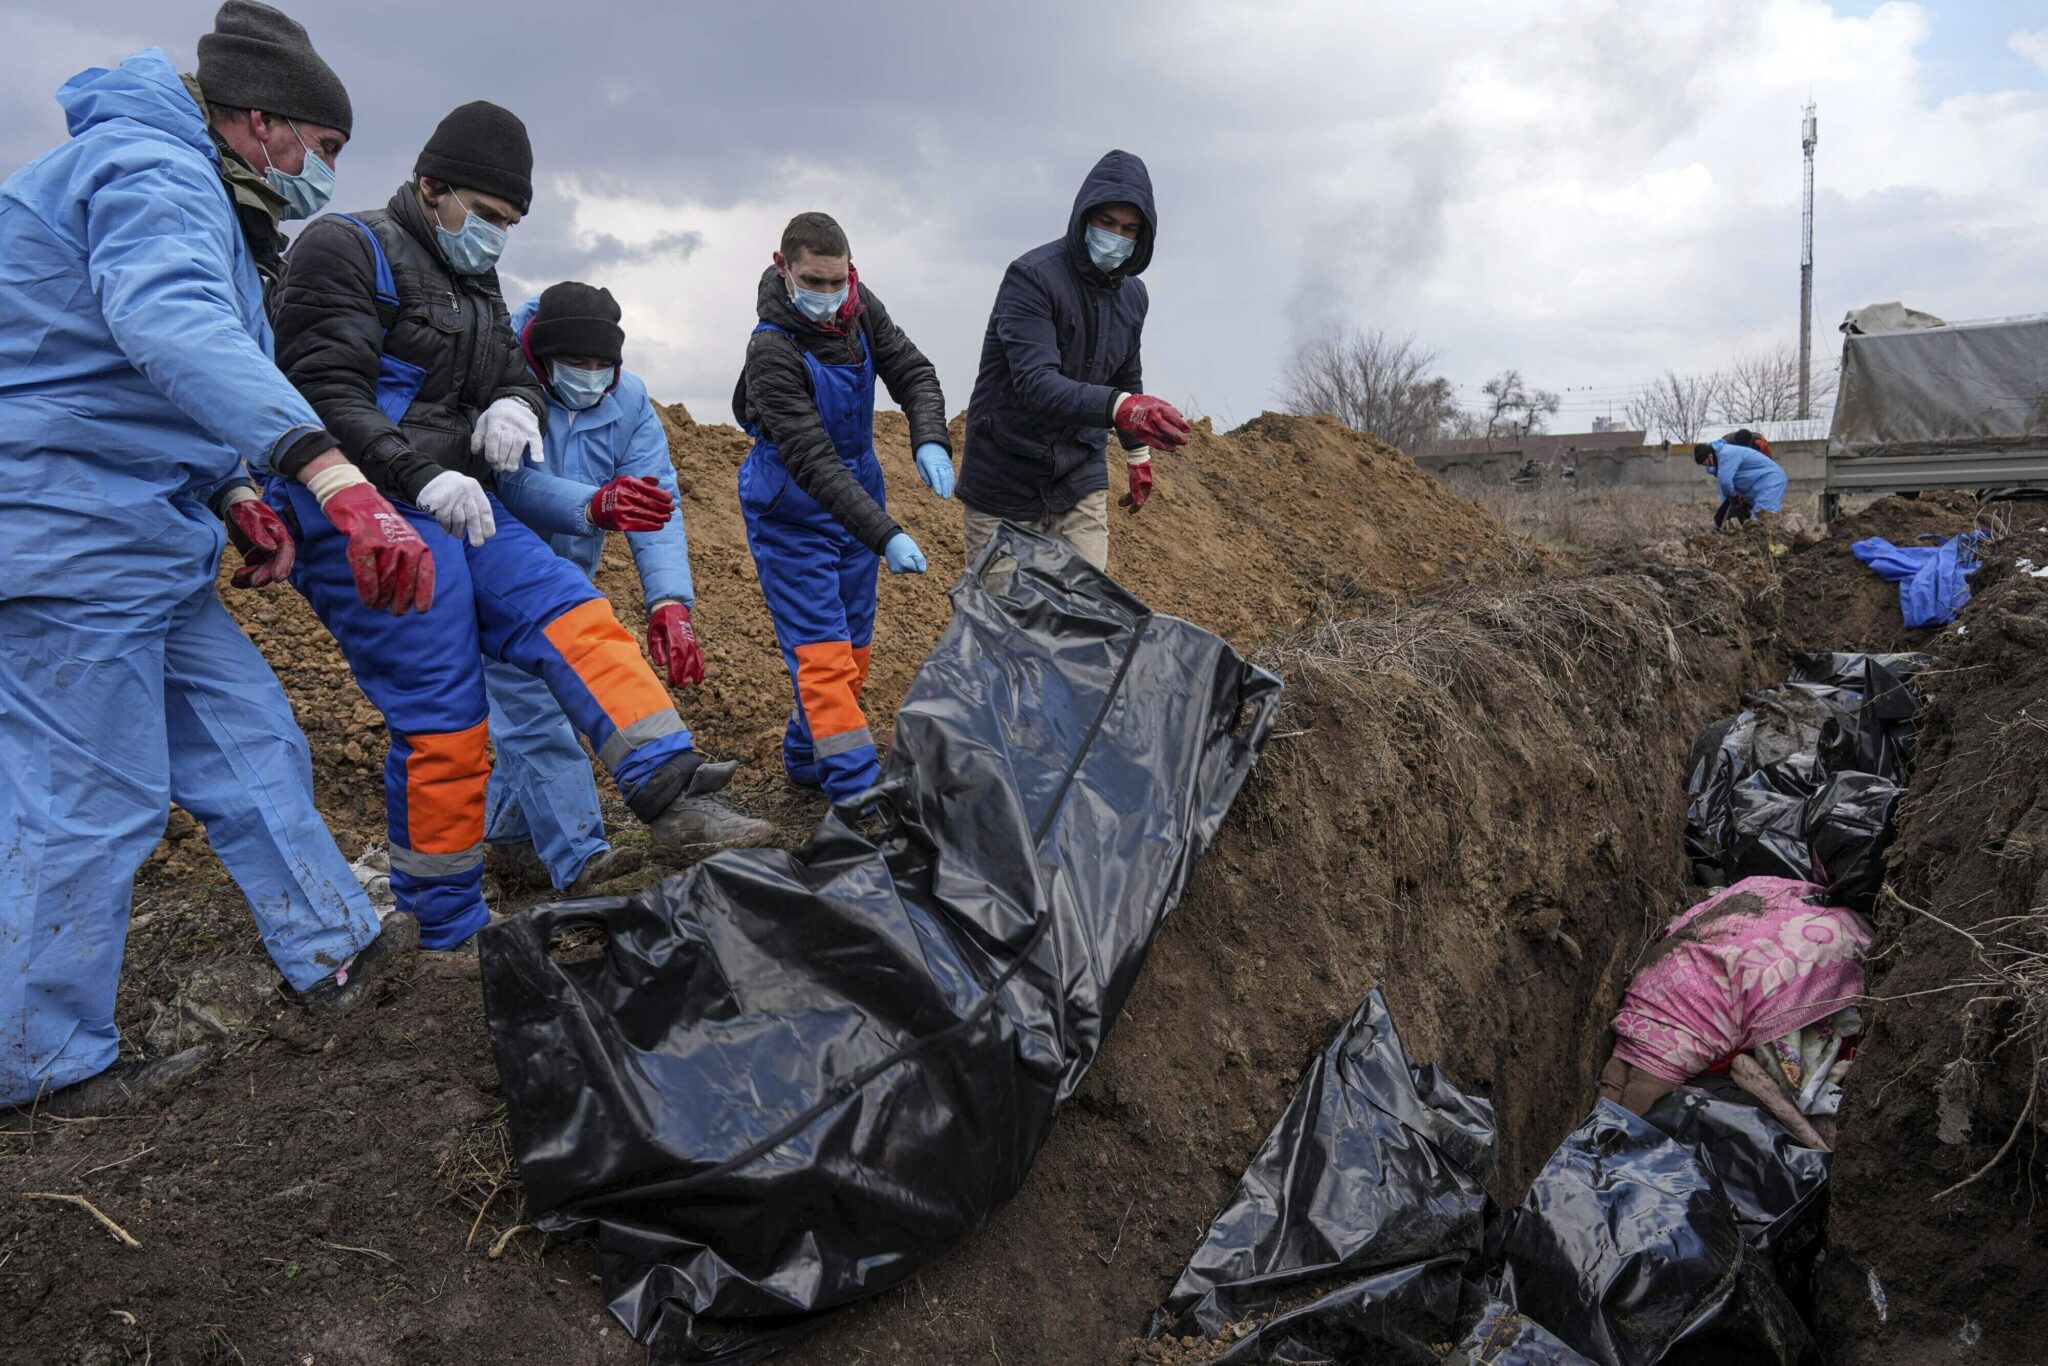 Люди кладут тела погибших в братскую могилу на окраине Мариуполя, поскольку не могут похоронить своих близких из-за сильных обстрелов российскими войсками. Фото Evgeniy Maloletka/AP Photo/Scanpix/Leta